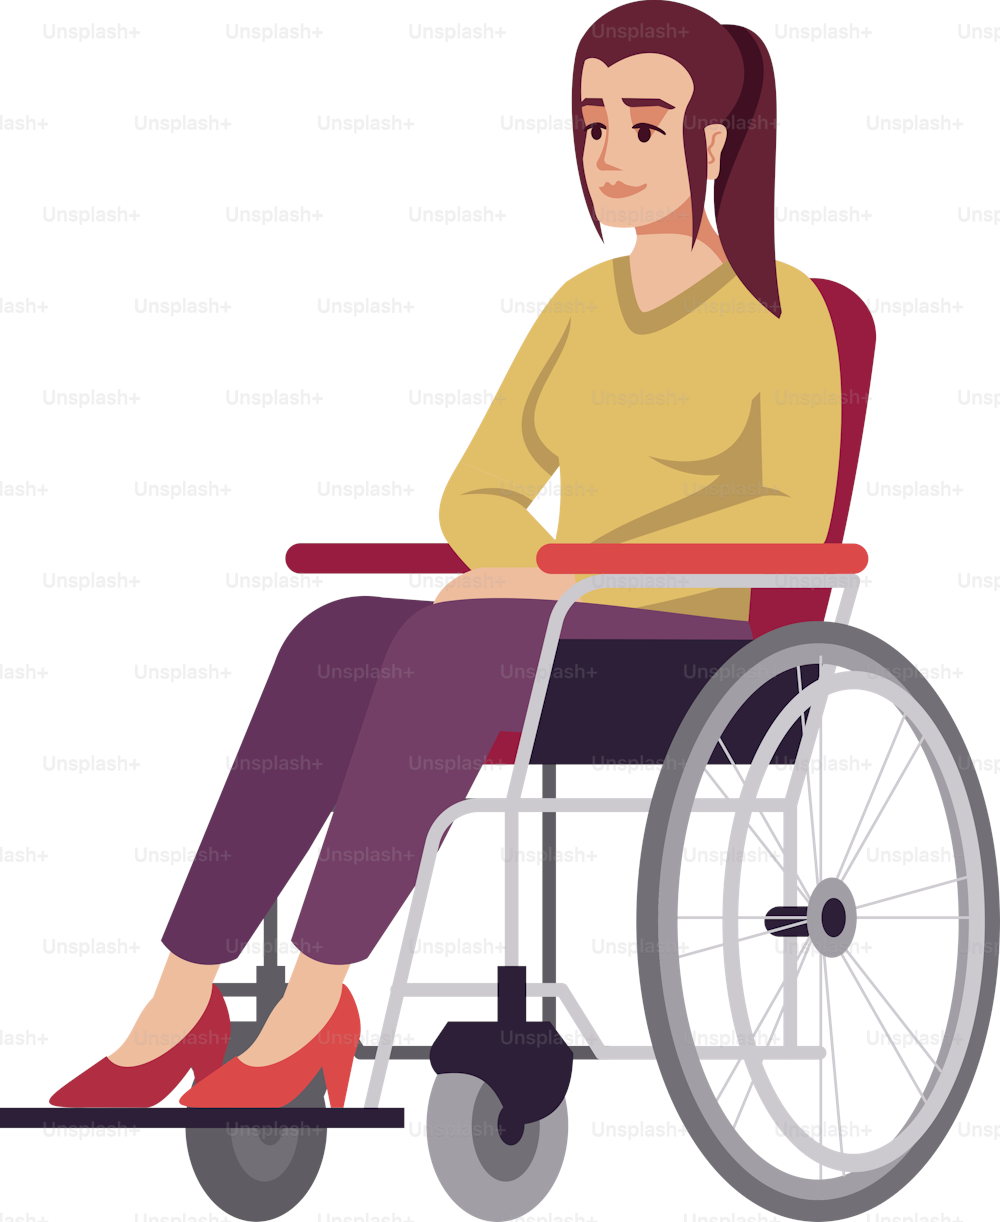 Mujer en silla de ruedas semi plana RGB ilustración vectorial en color. Niña discapacitada. Persona discapacitada. Período de recuperación. Rehabilitación. Consulta de psicología. Personaje de dibujos animados aislado sobre fondo blanco